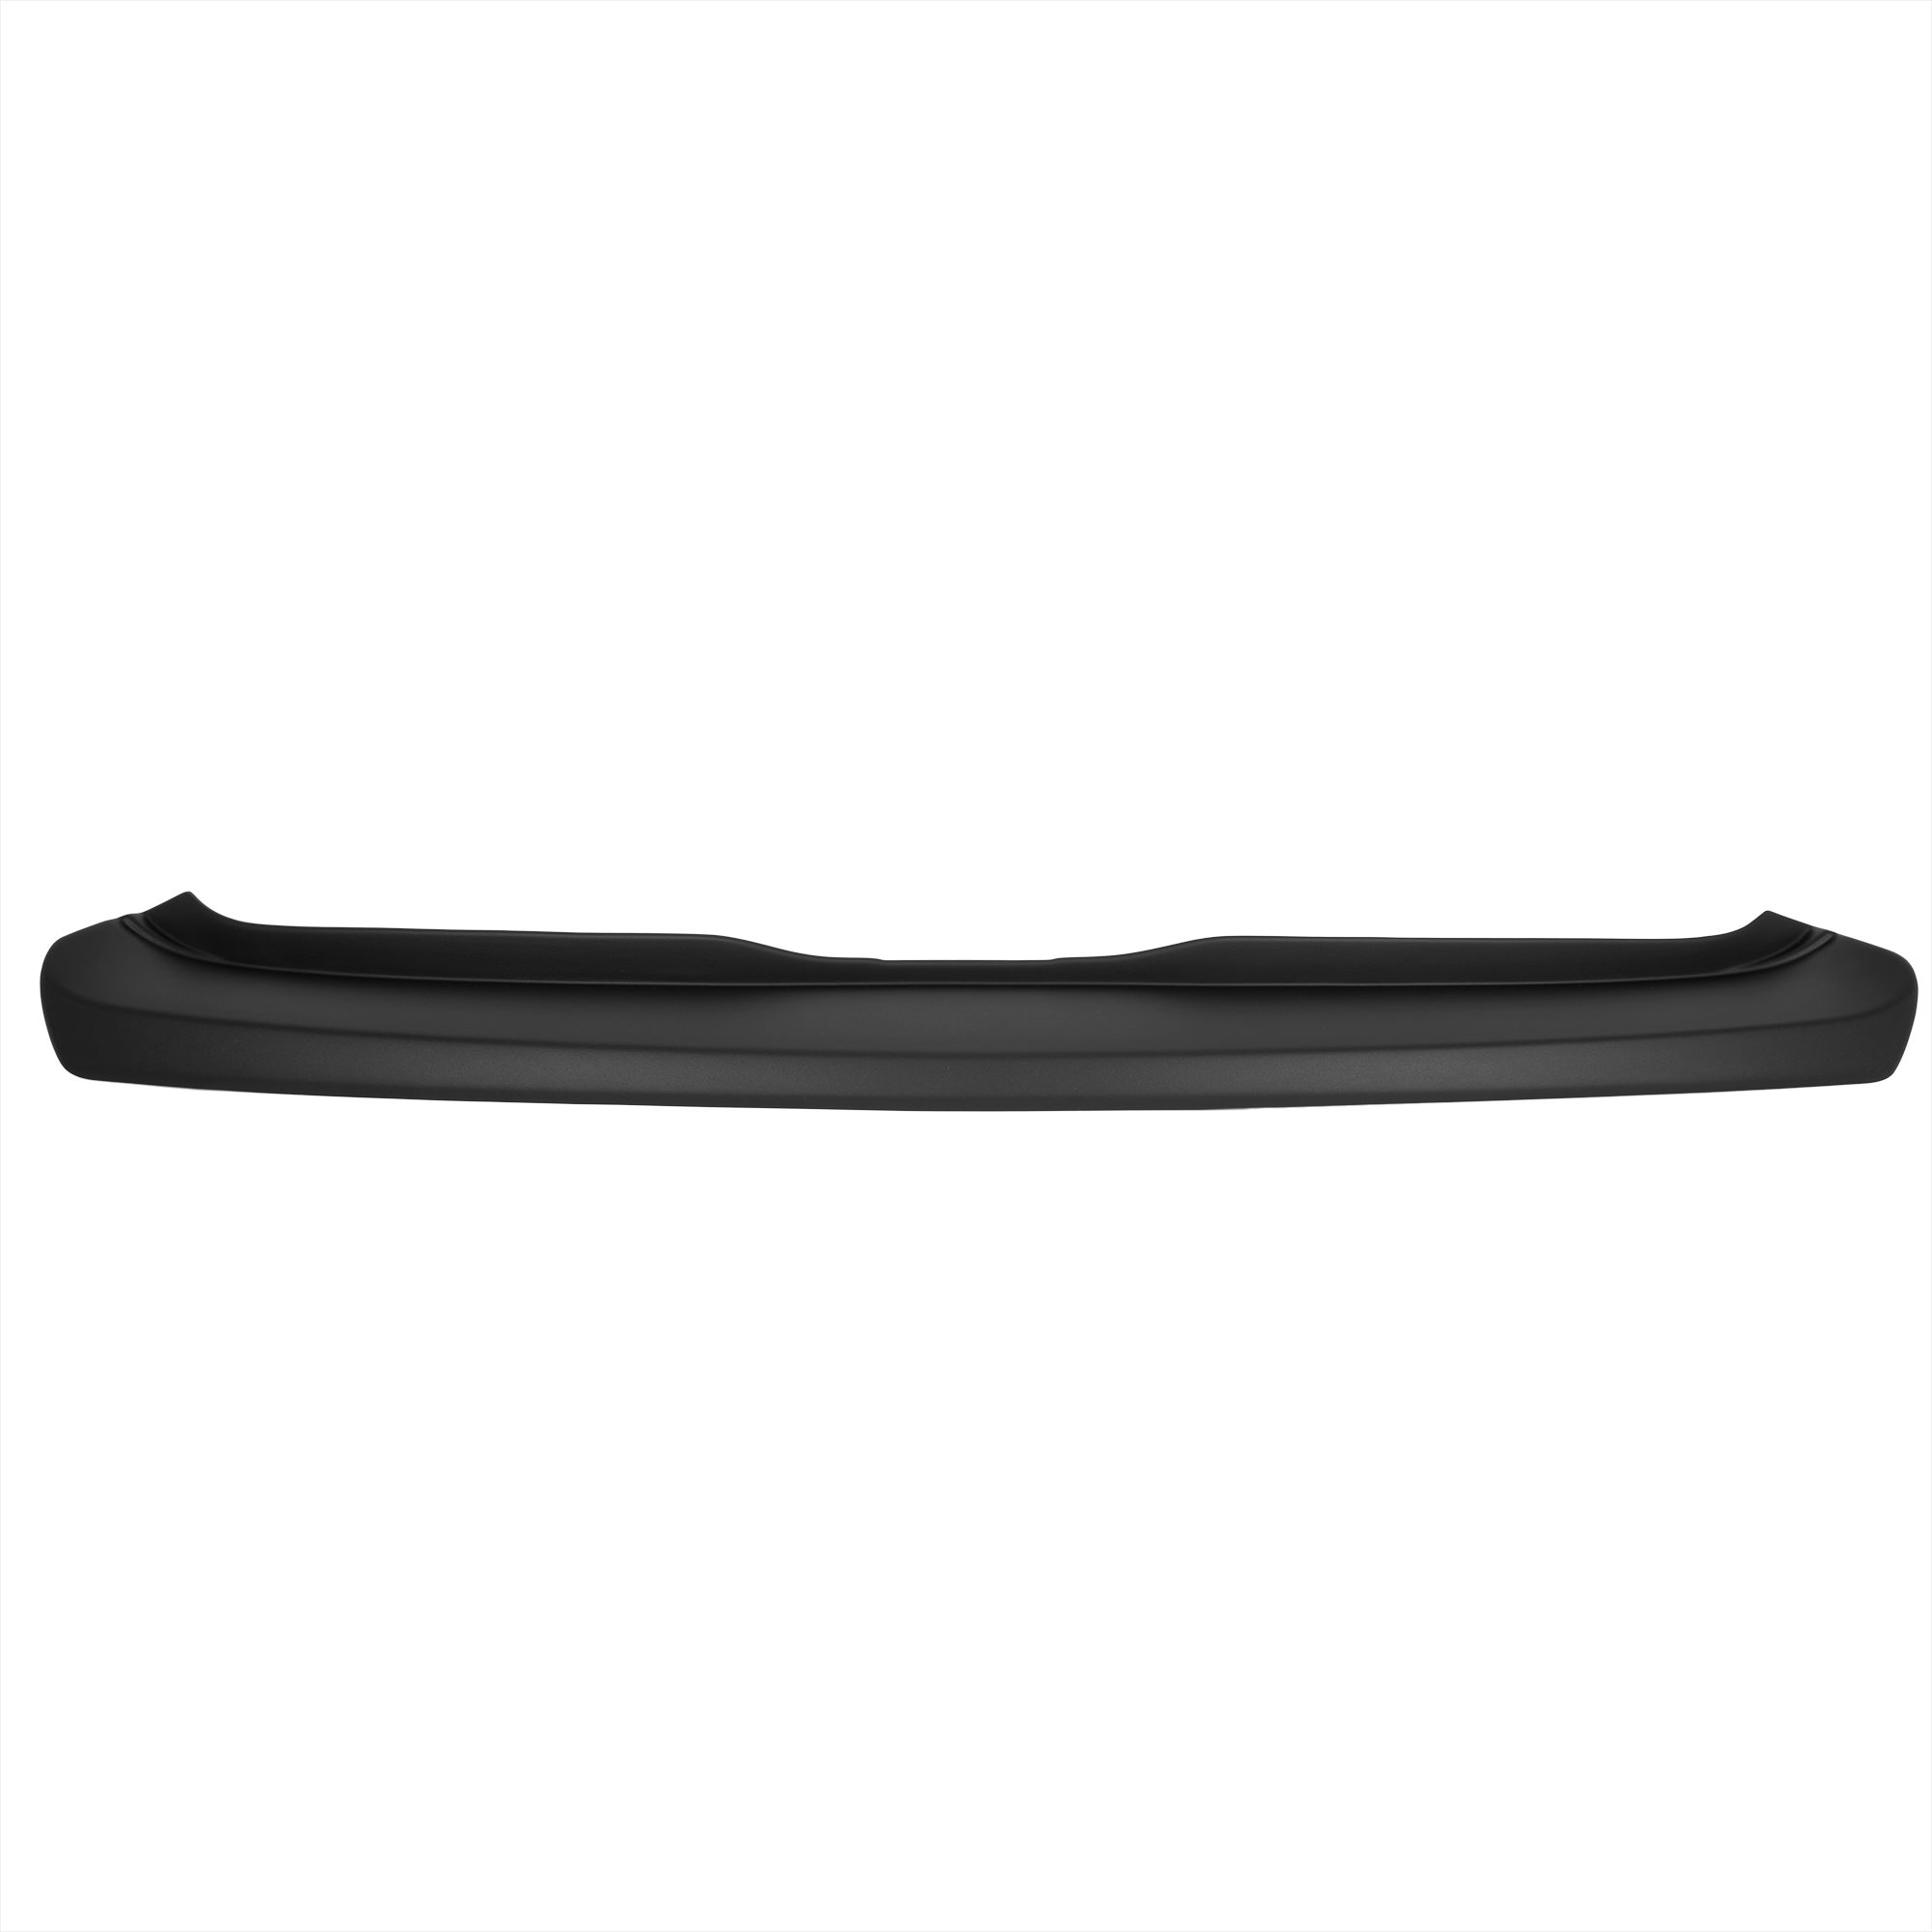 Ladekantenschutz mit Abkantung passend für MERCEDES A KLASSE W169  (Facelift) ab BJ. 05.2008 bis 08.2012 ABS Farbe schwarz | Aroba